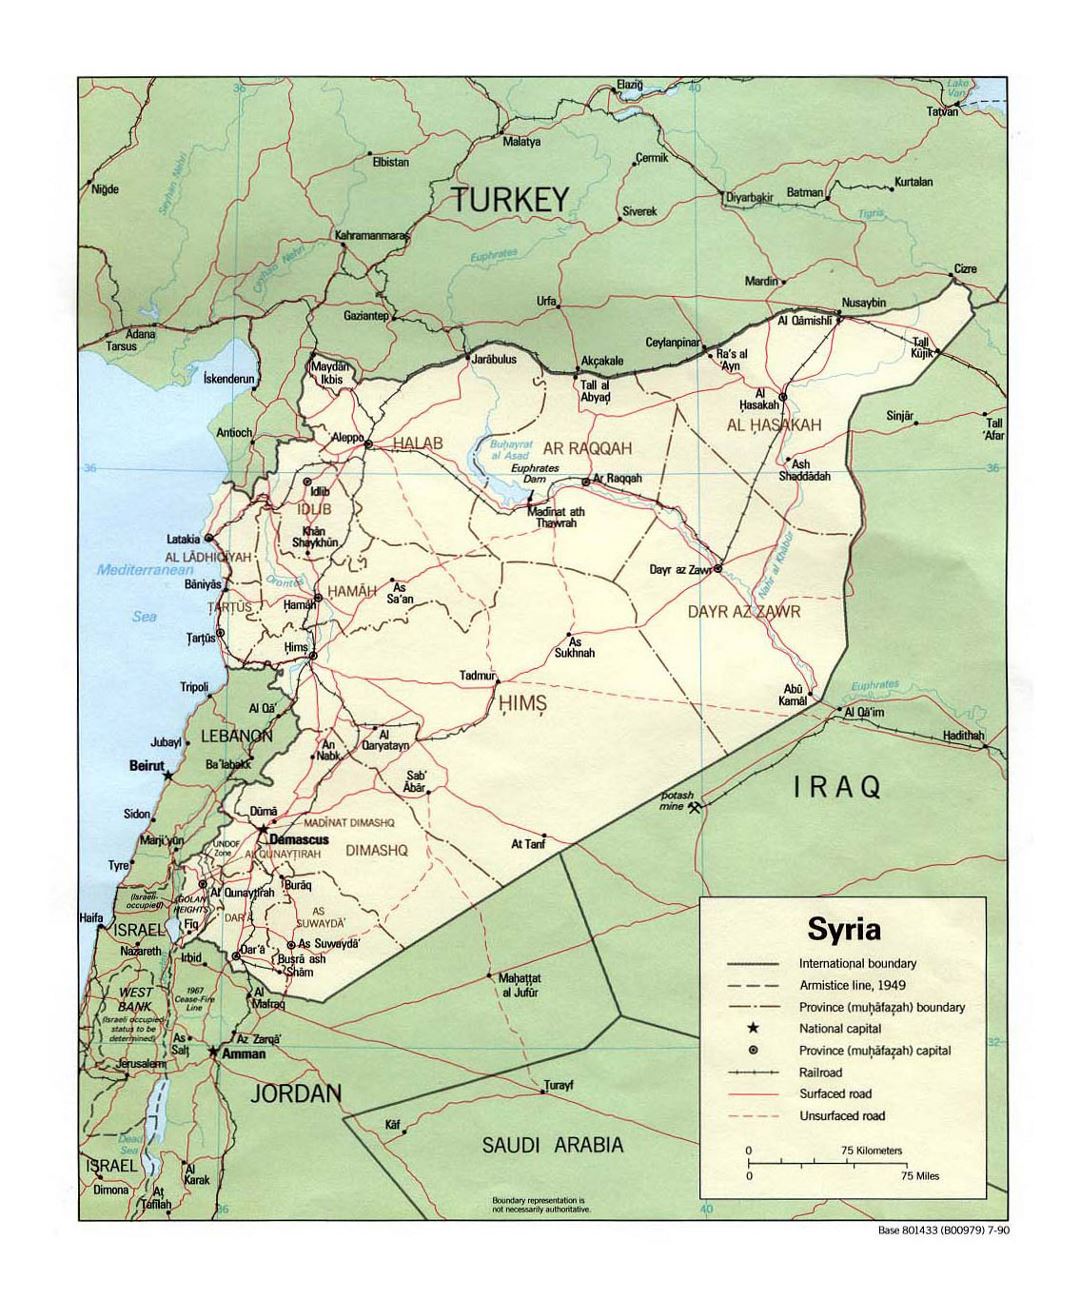 Detallado mapa político y administrativo de Siria con carreteras, ferrocarriles y principales ciudades - 1990